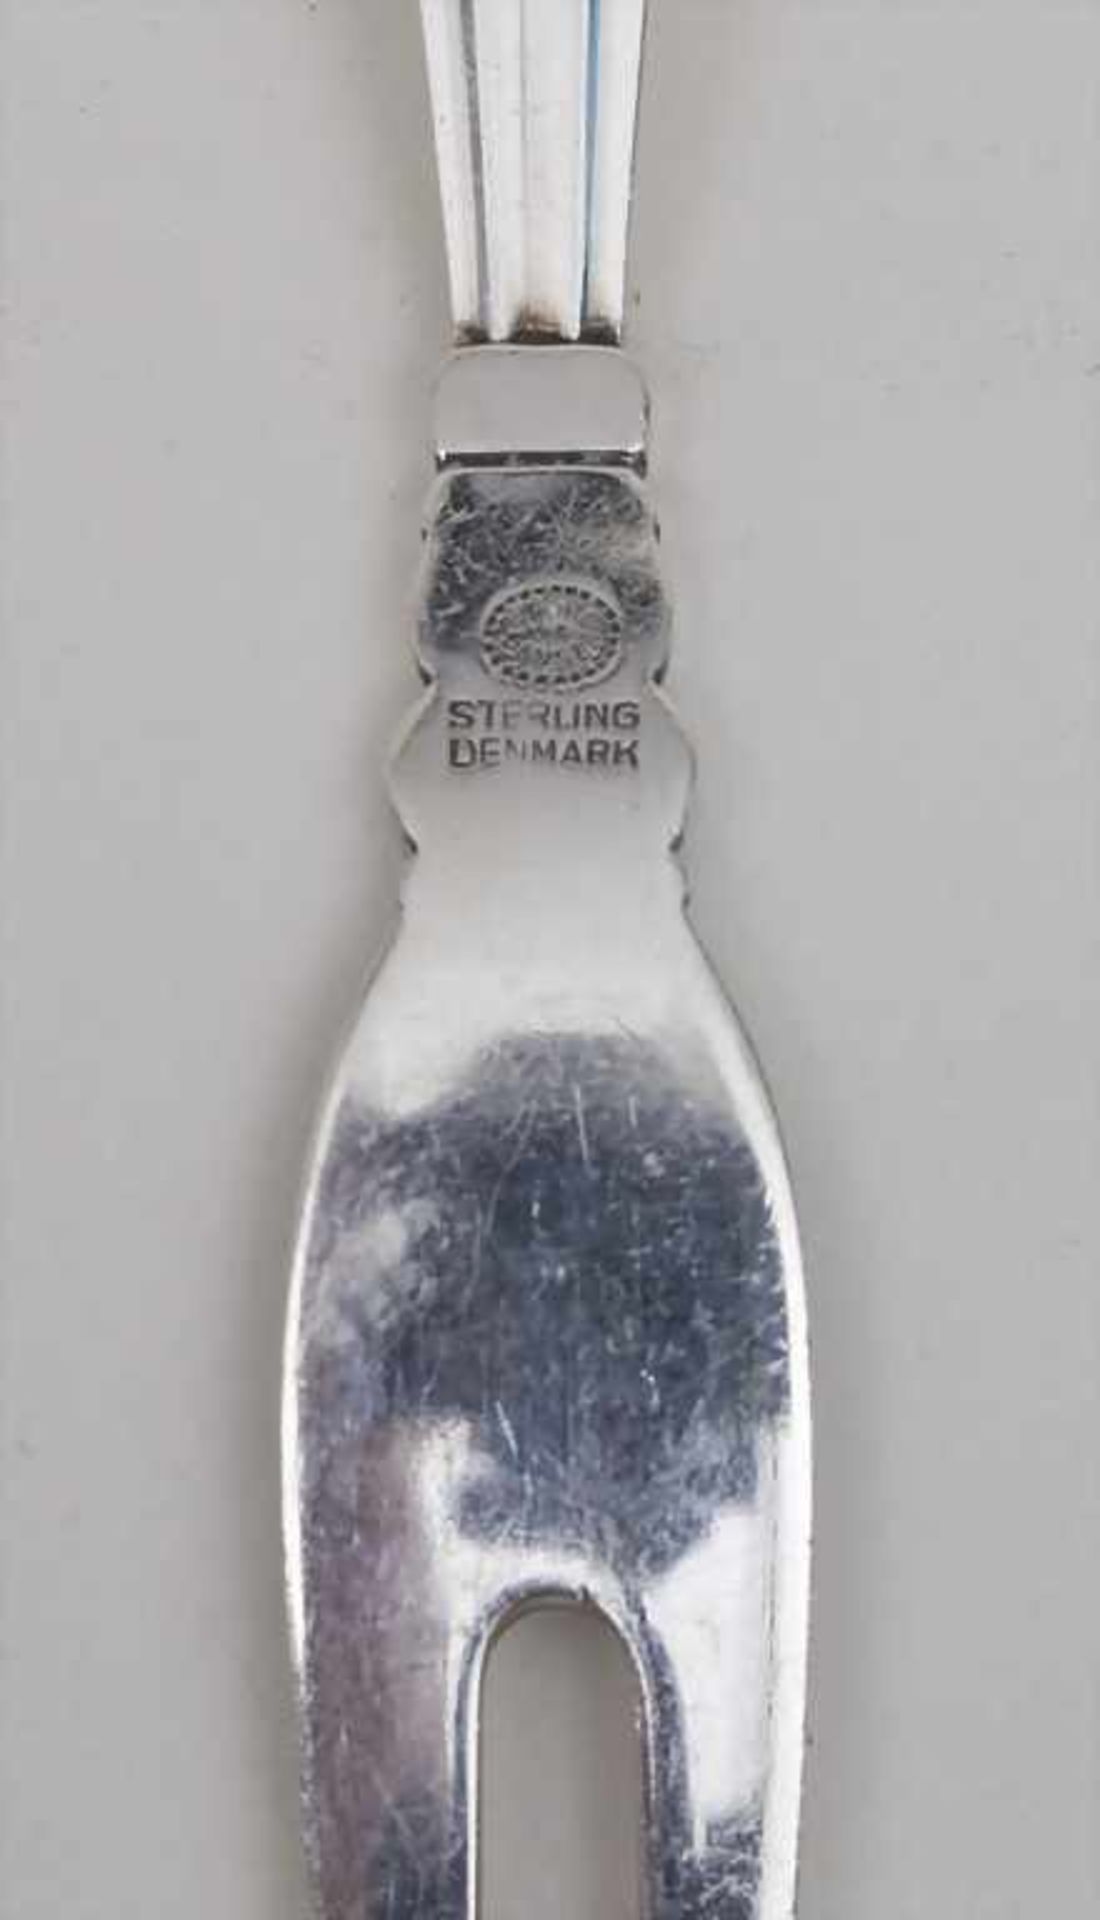 Aufschnittgabel 'Acorn' / A fork for cold cuts 'Acorn', Georg Jensen, Kopenhagen, nach 1945 - Bild 2 aus 2